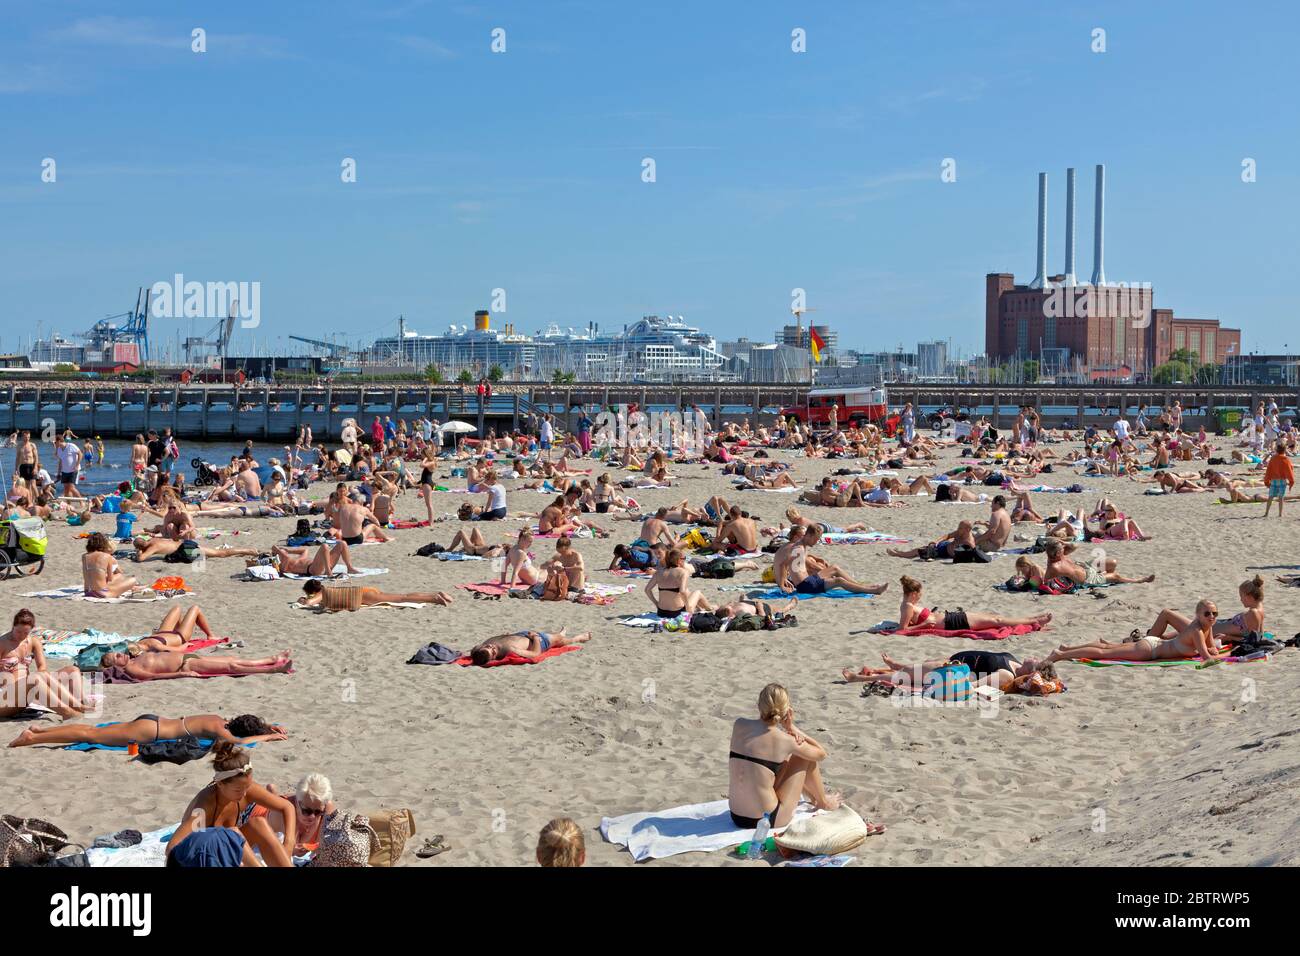 Playa de Svanemølle, playa urbana y baño del puerto en el puerto norte de Copenhague. Playa de arena de 4,000 m² con un muelle de 130 m de largo establecido en junio de 2010. Foto de stock